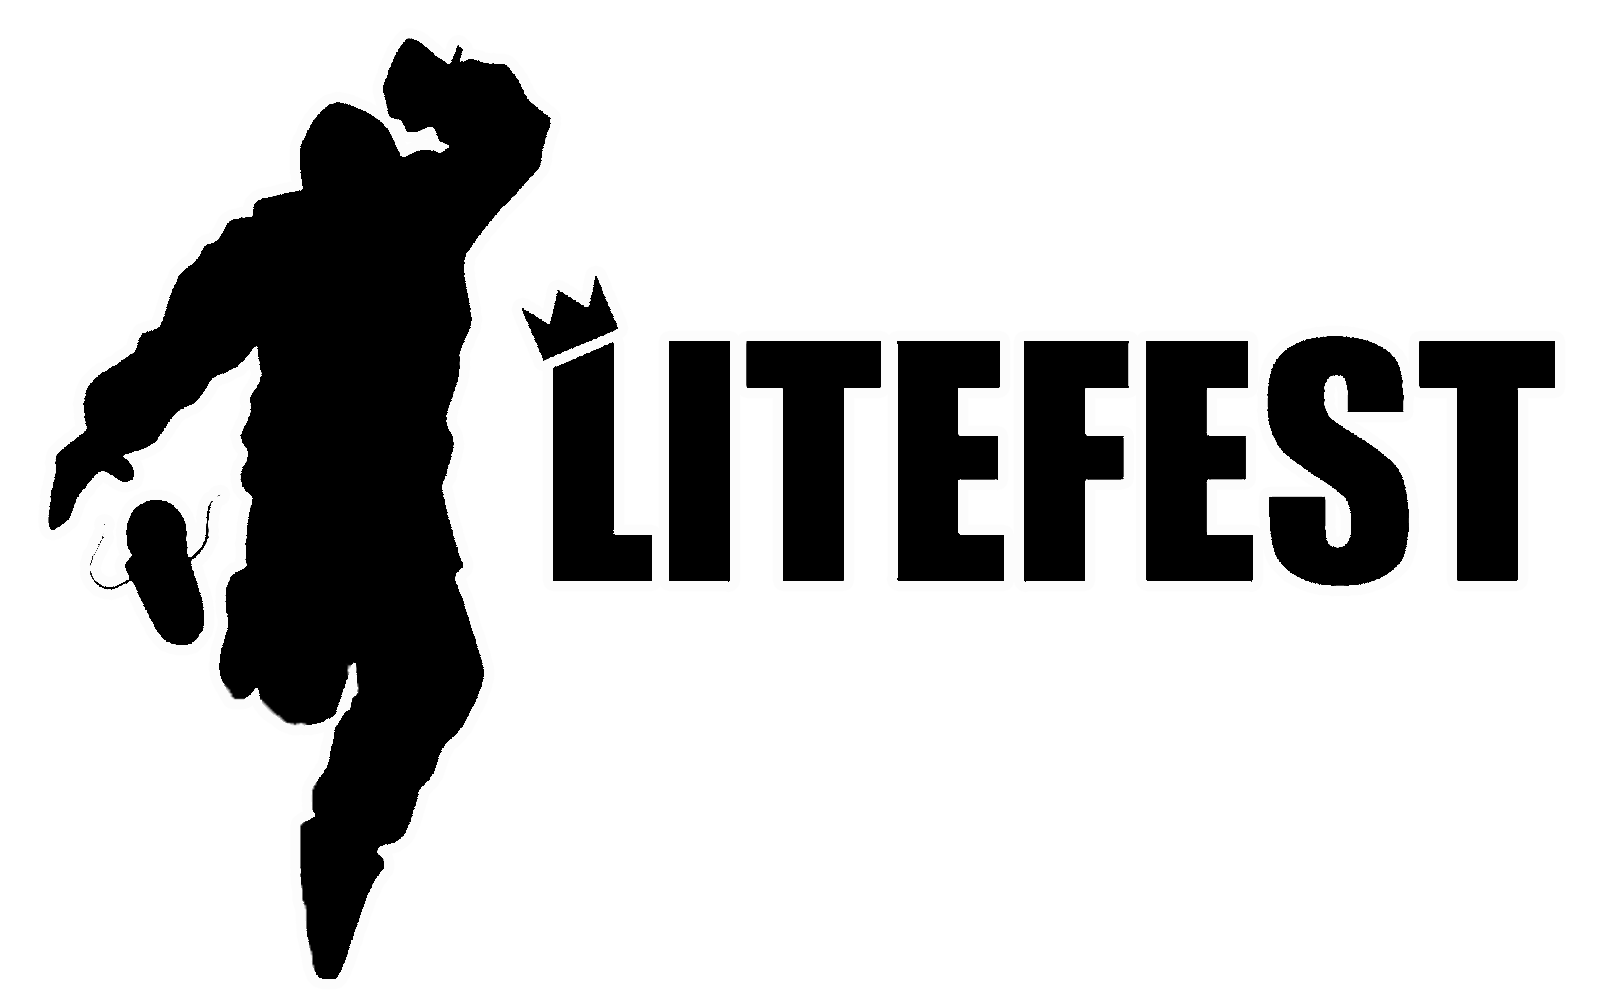 Litefest